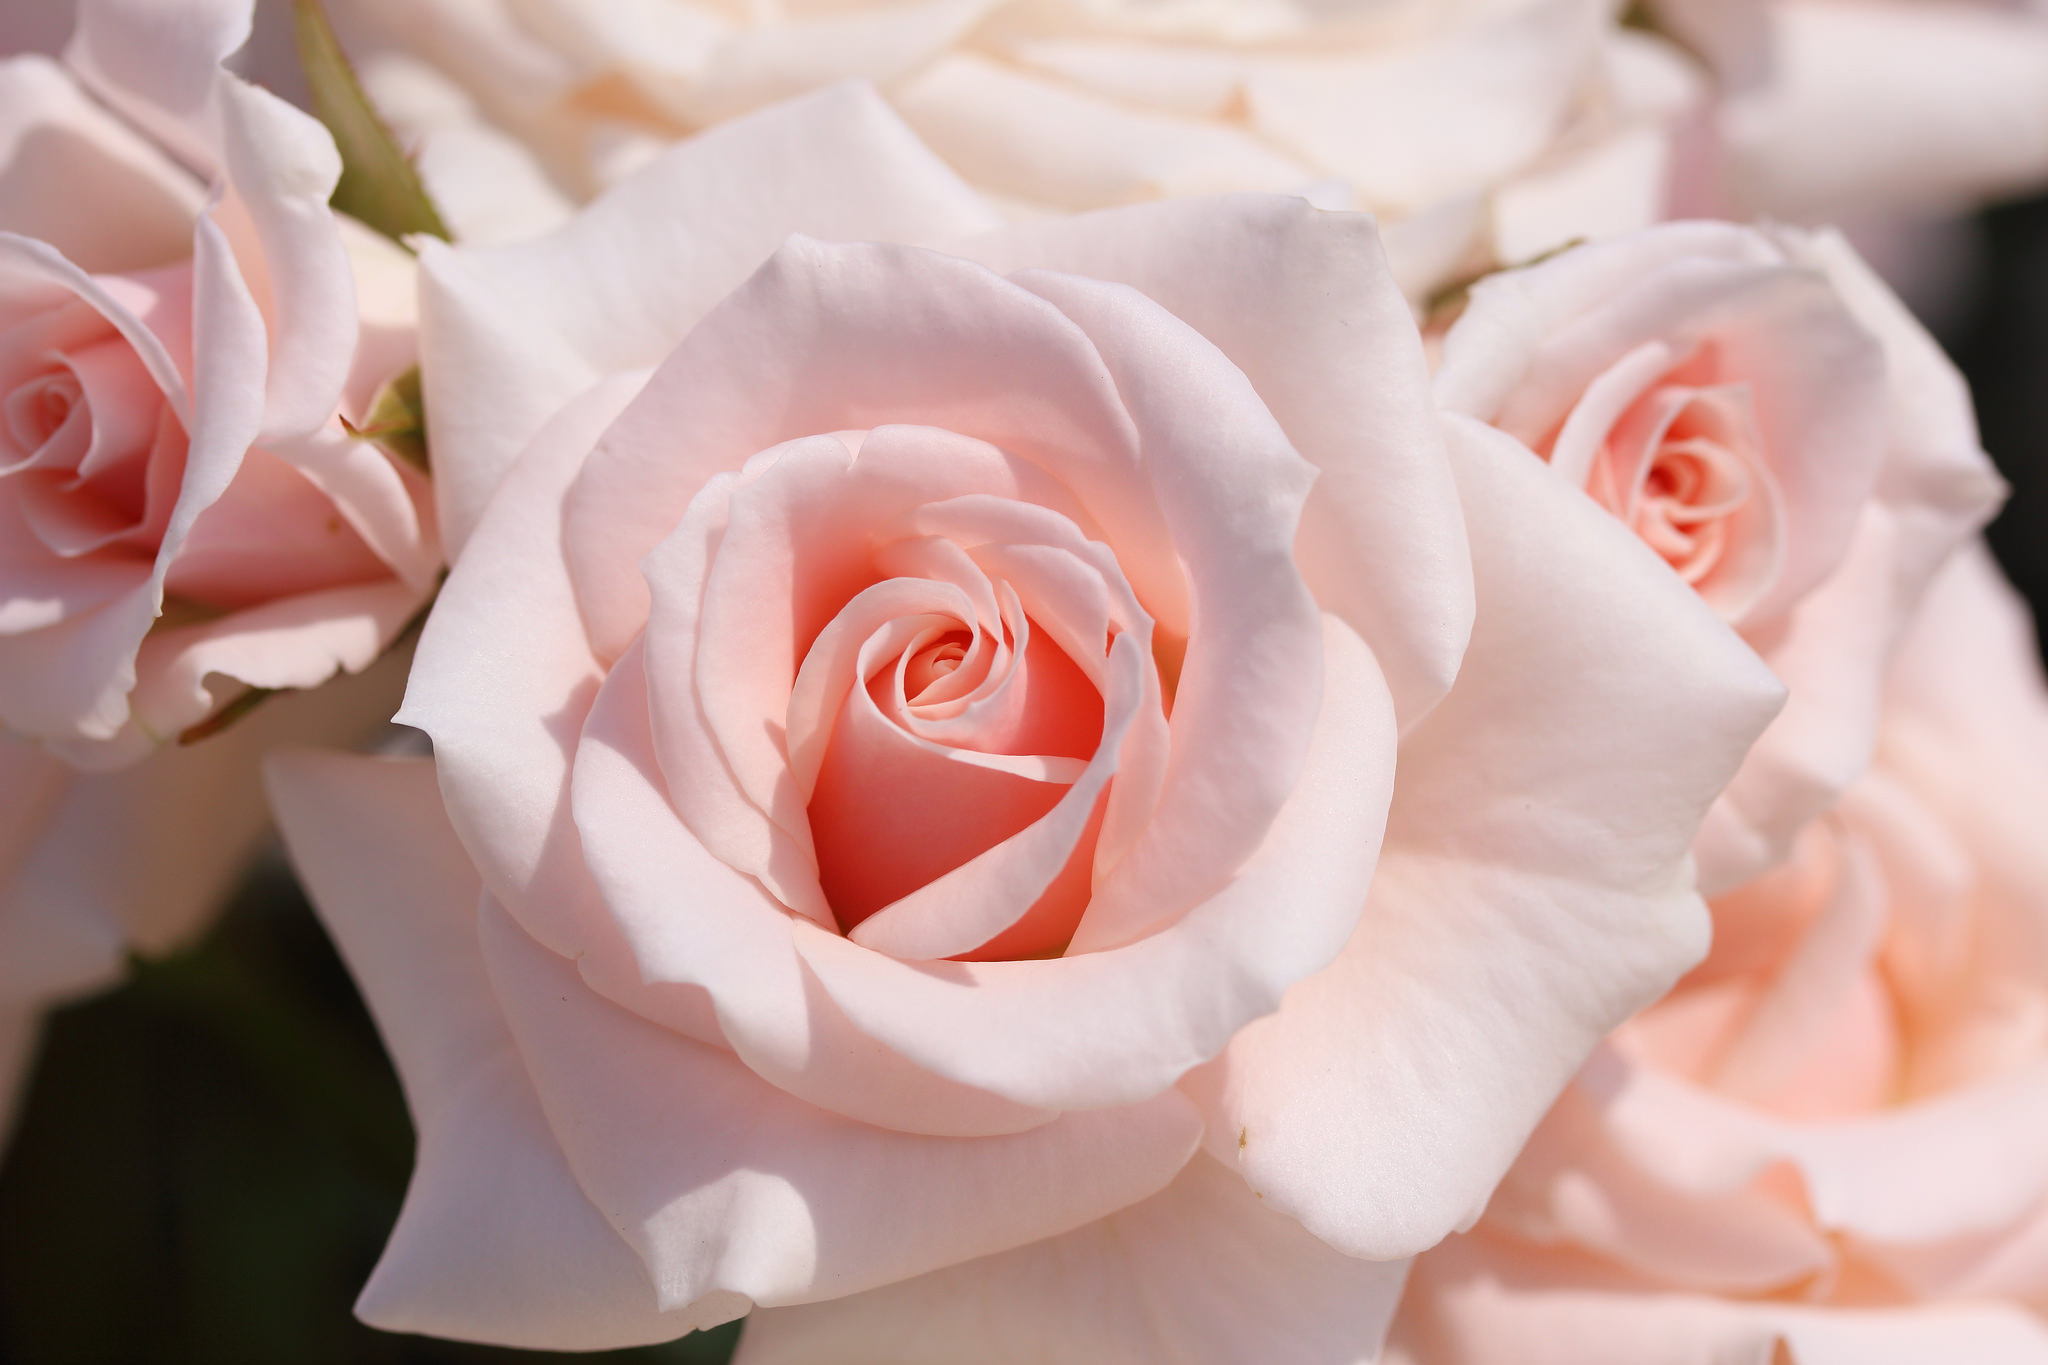 Фото доставленных нежно-розовых роз